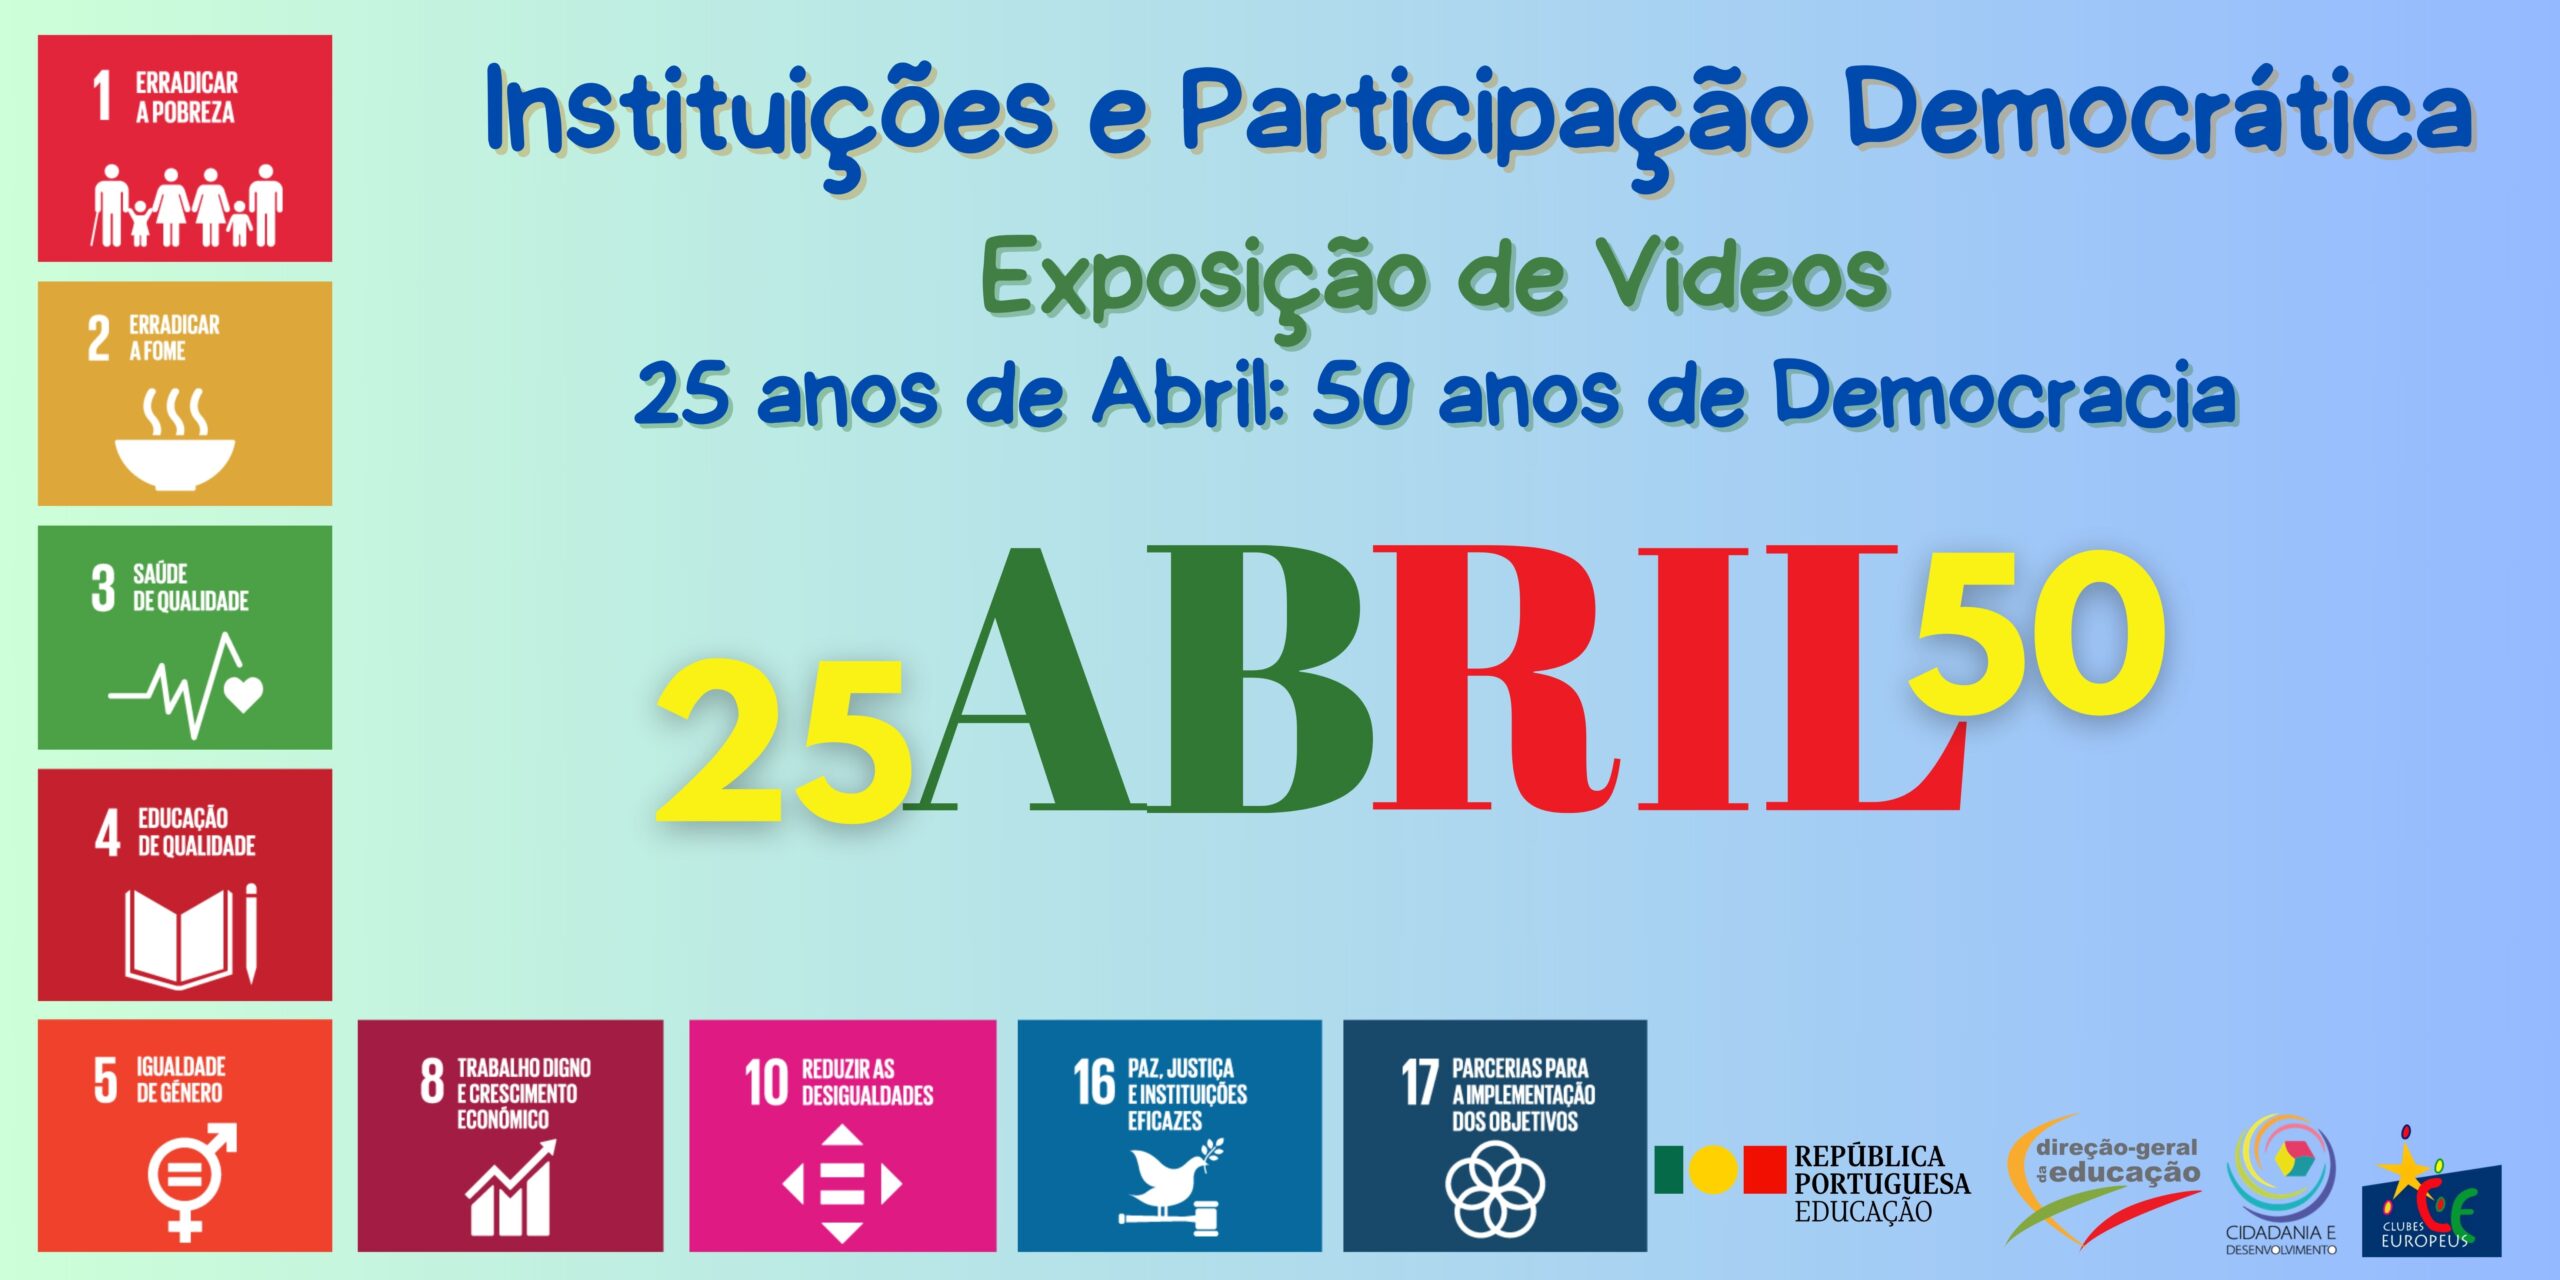 Capa Oficial do Evento Exposição de Vídeos “25 de abril - 50 anos de Democracia”